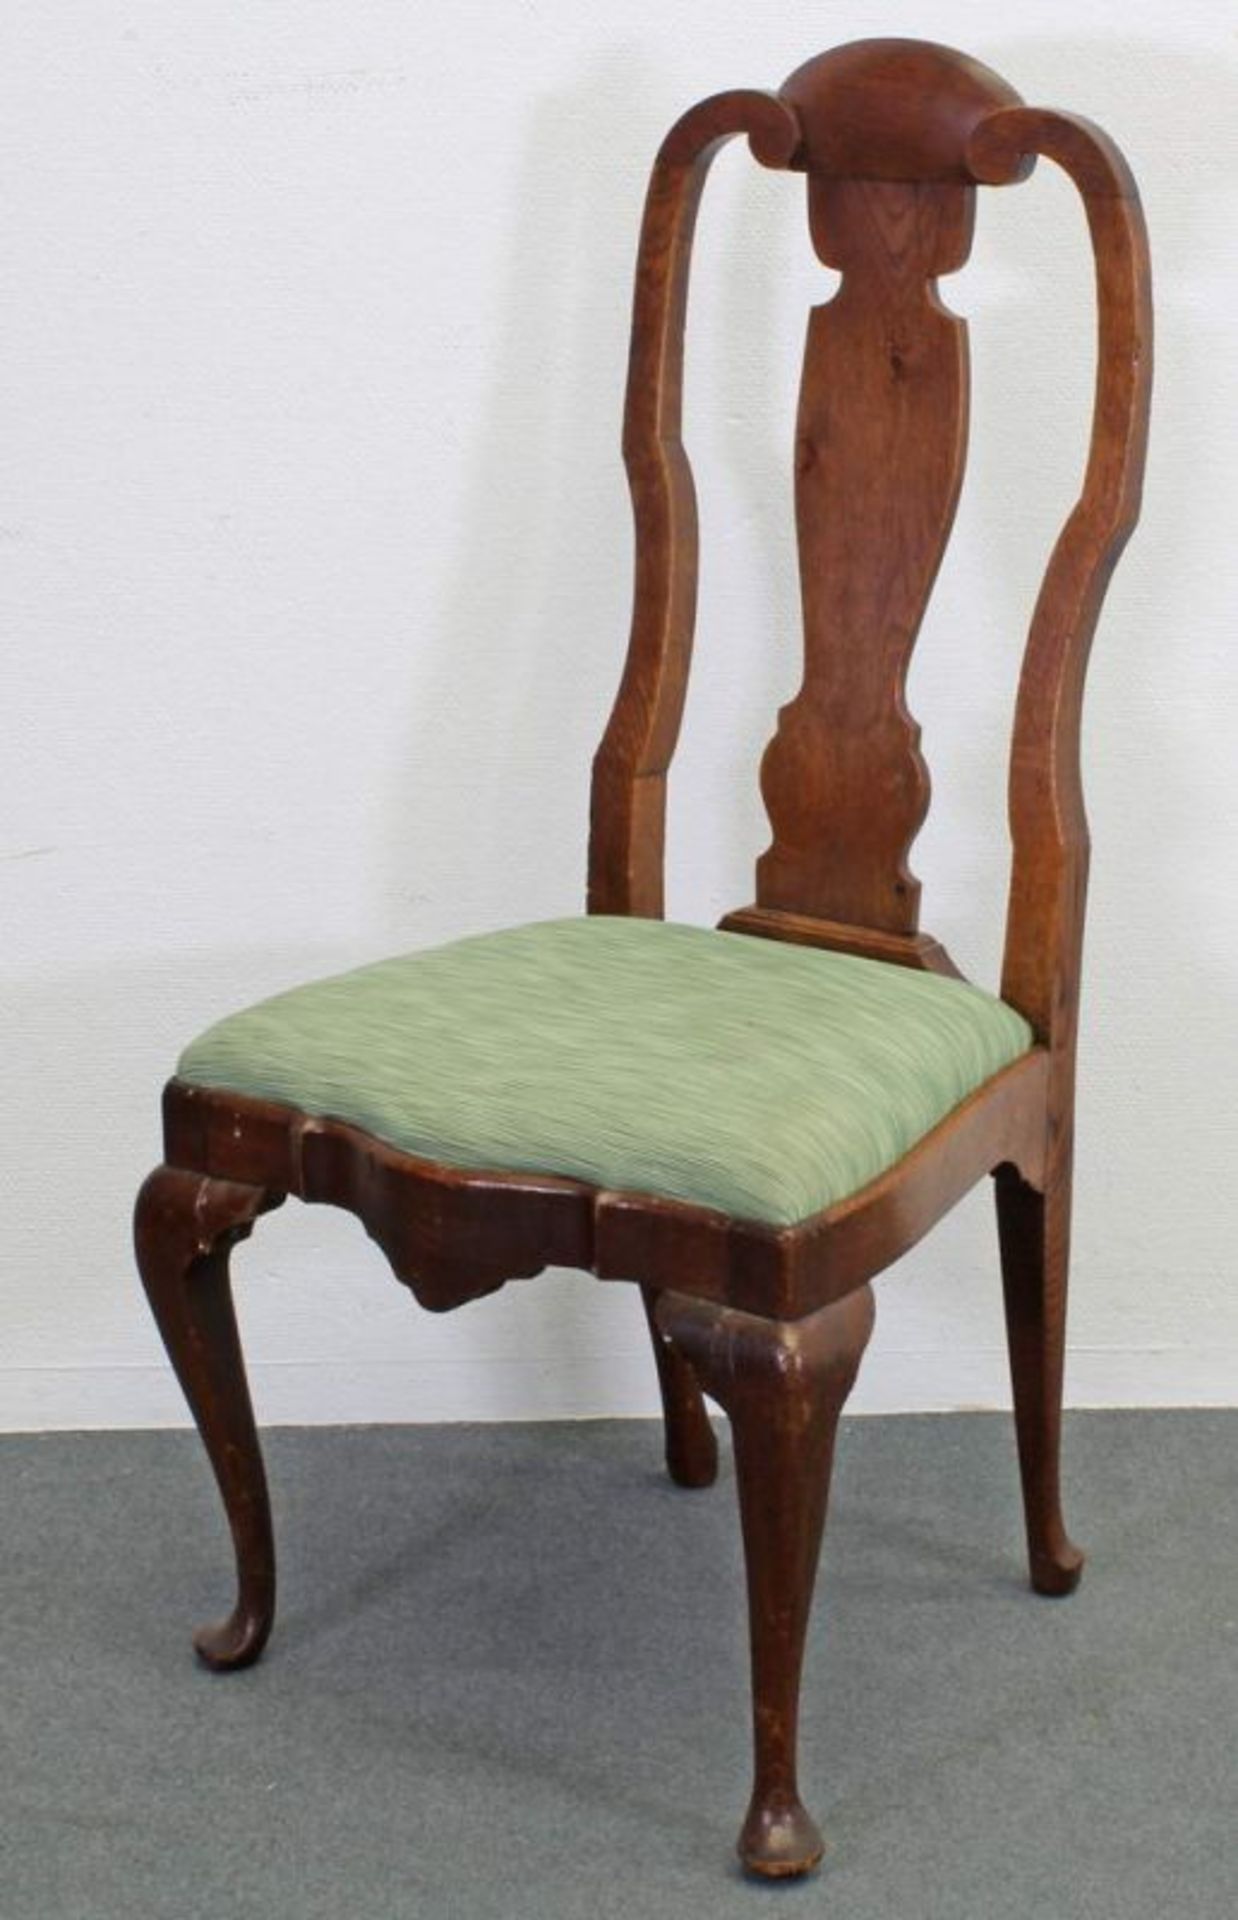 4 Stühle, 2 Armstühle, England, 19. Jh., Queen Anne Stil, Eiche, Sitzpolster 20.00 % buyer's premium - Image 2 of 3